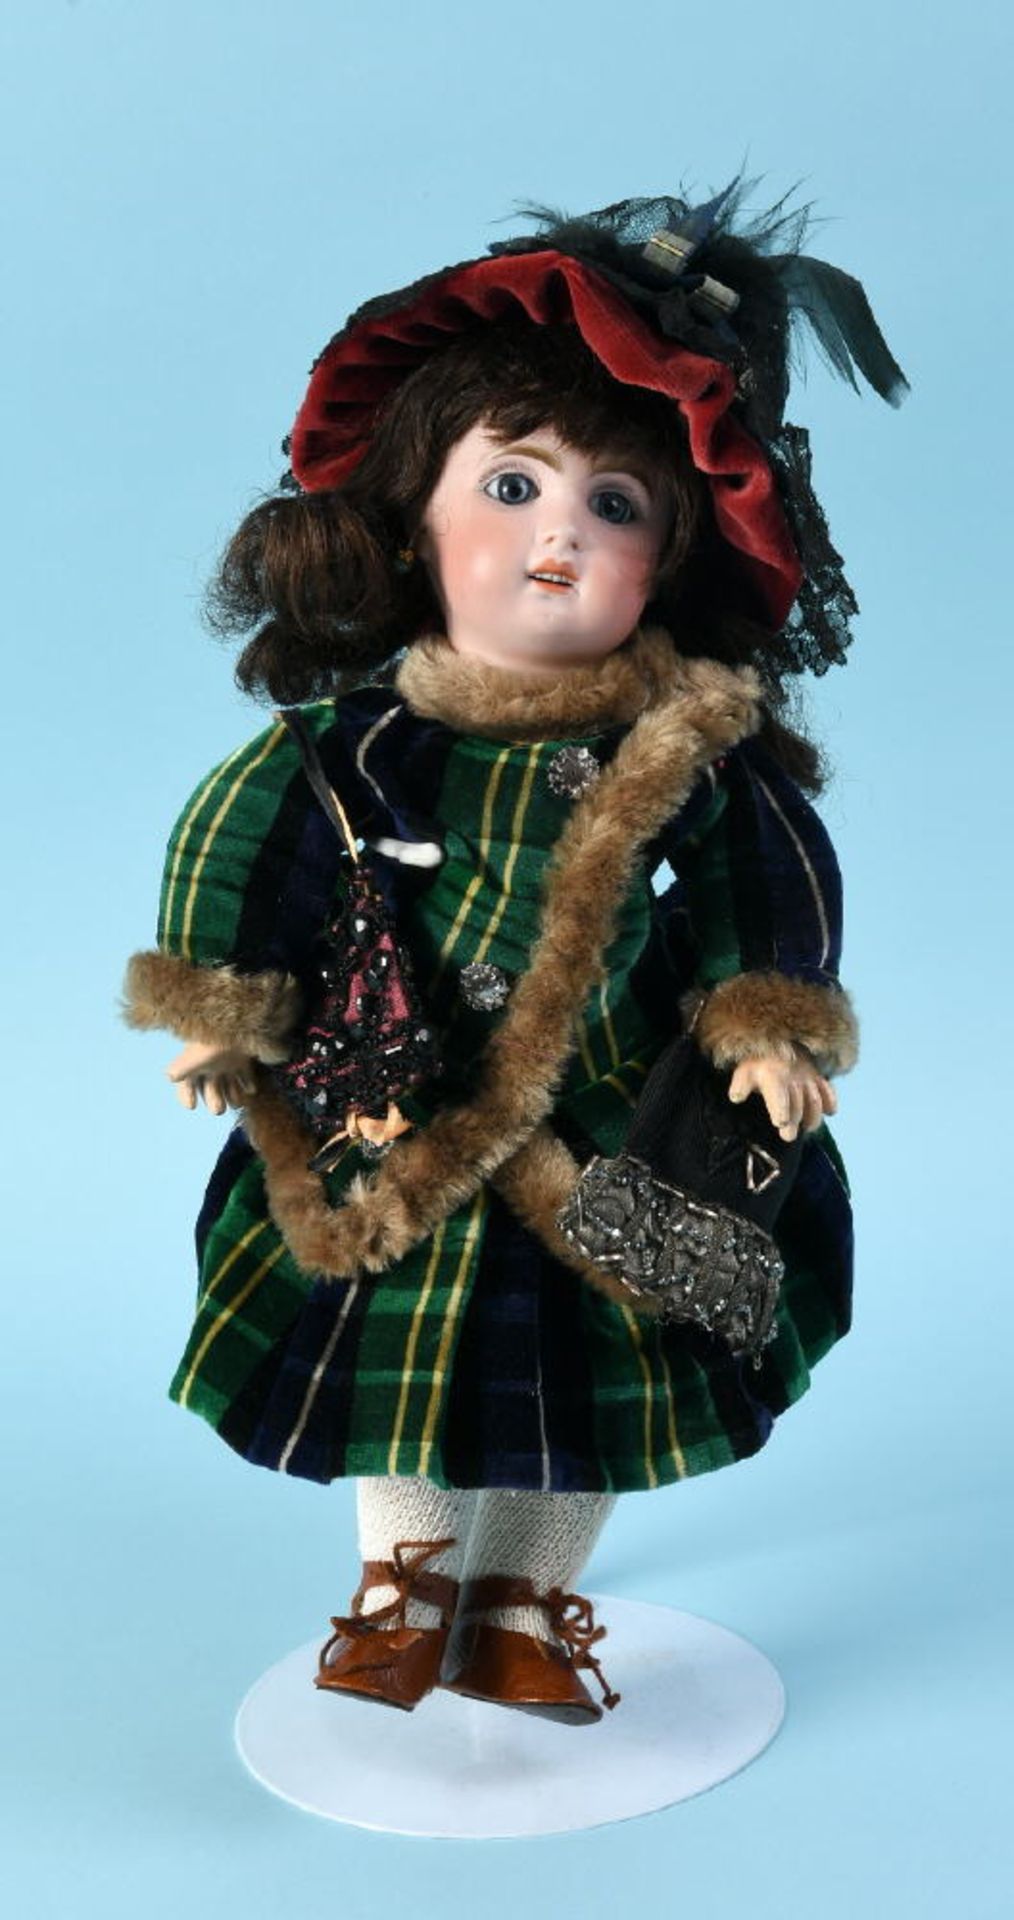 Puppe - MädchenKopf Porzellan, Glasaugen, offener Mund, durchstochene Ohren